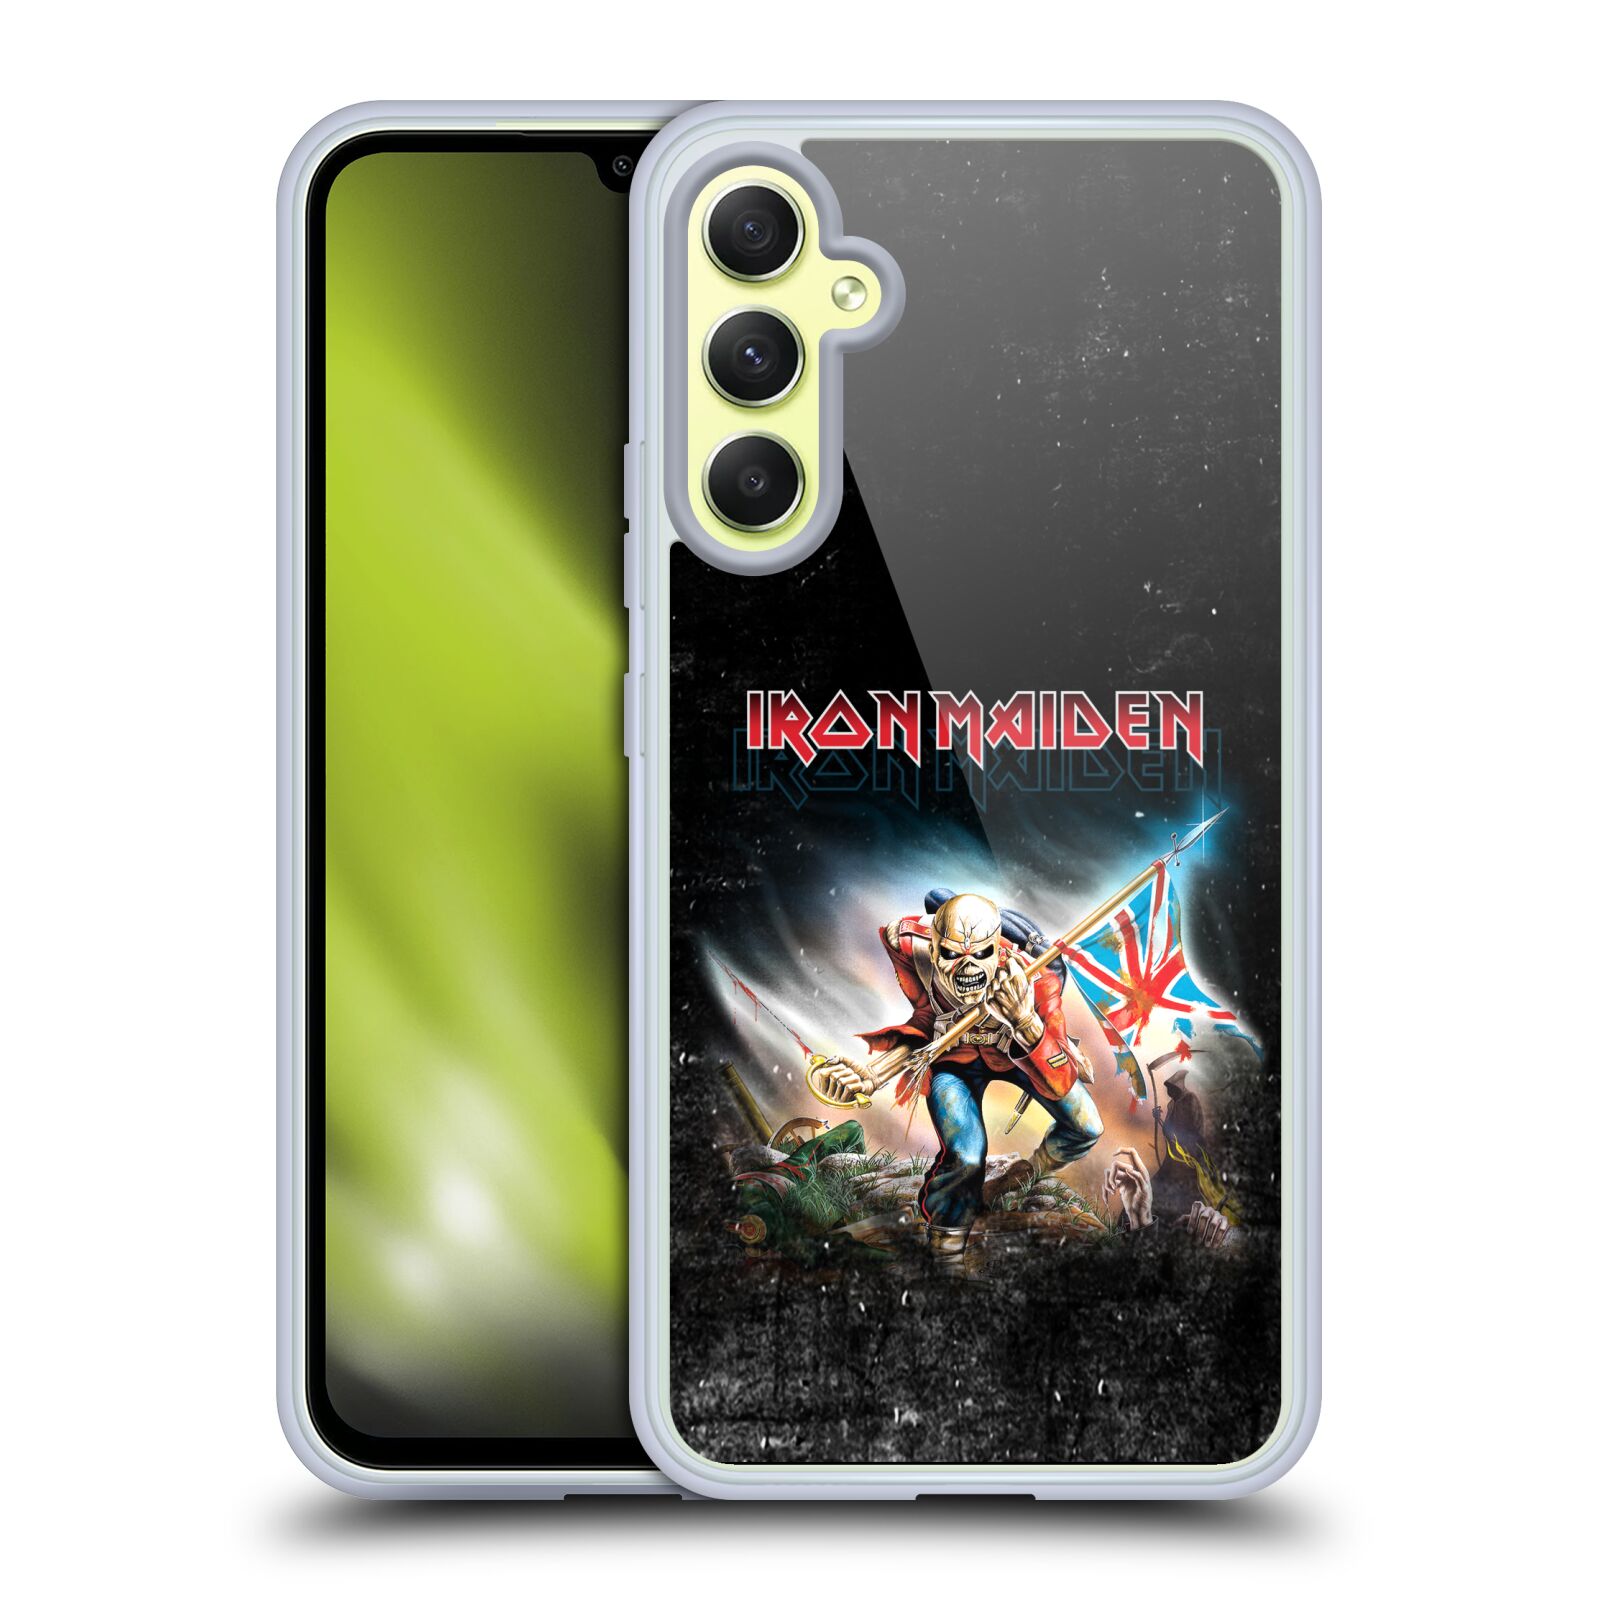 Silikonové pouzdro na mobil Samsung Galaxy A34 5G - Head Case - Iron Maiden - Trooper 2016 (Silikonový kryt, obal, pouzdro na mobilní telefon Samsung Galaxy A34 5G s motivem Iron Maiden - Trooper 2016)